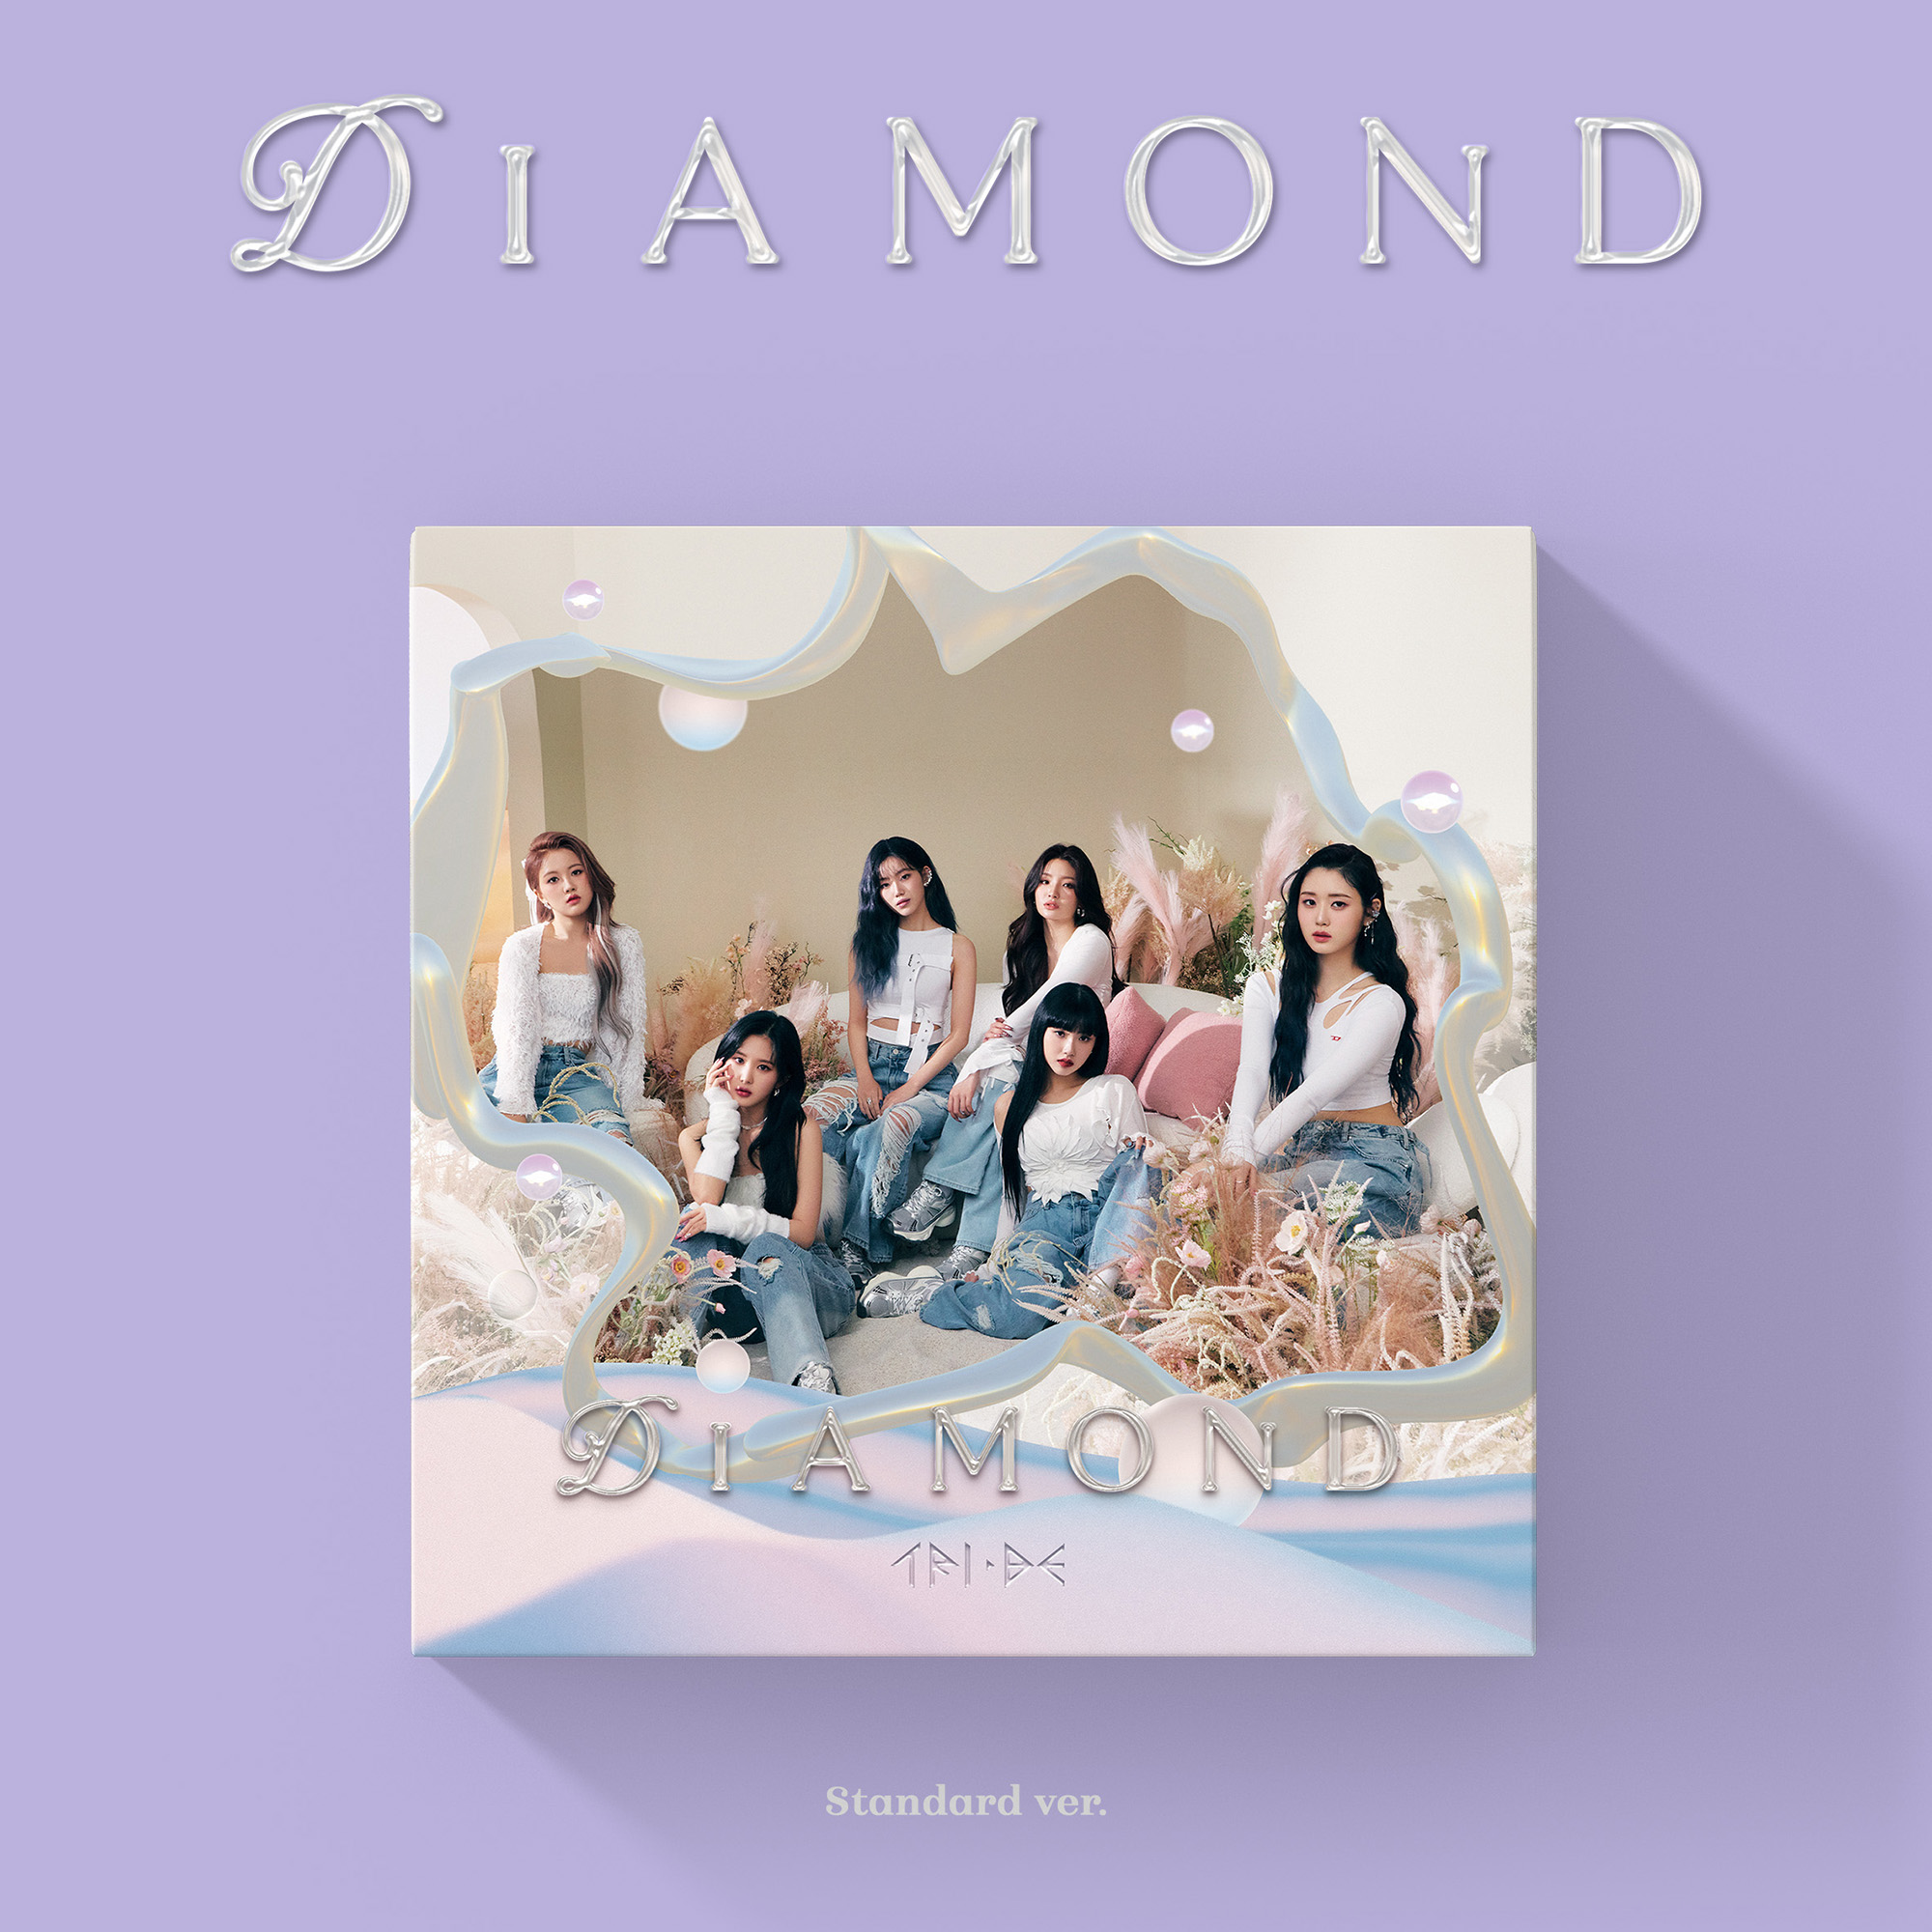 트라이비 (TRI.BE) - 4th Single [Diamond] (Standard Ver.)케이팝스토어(kpop store)